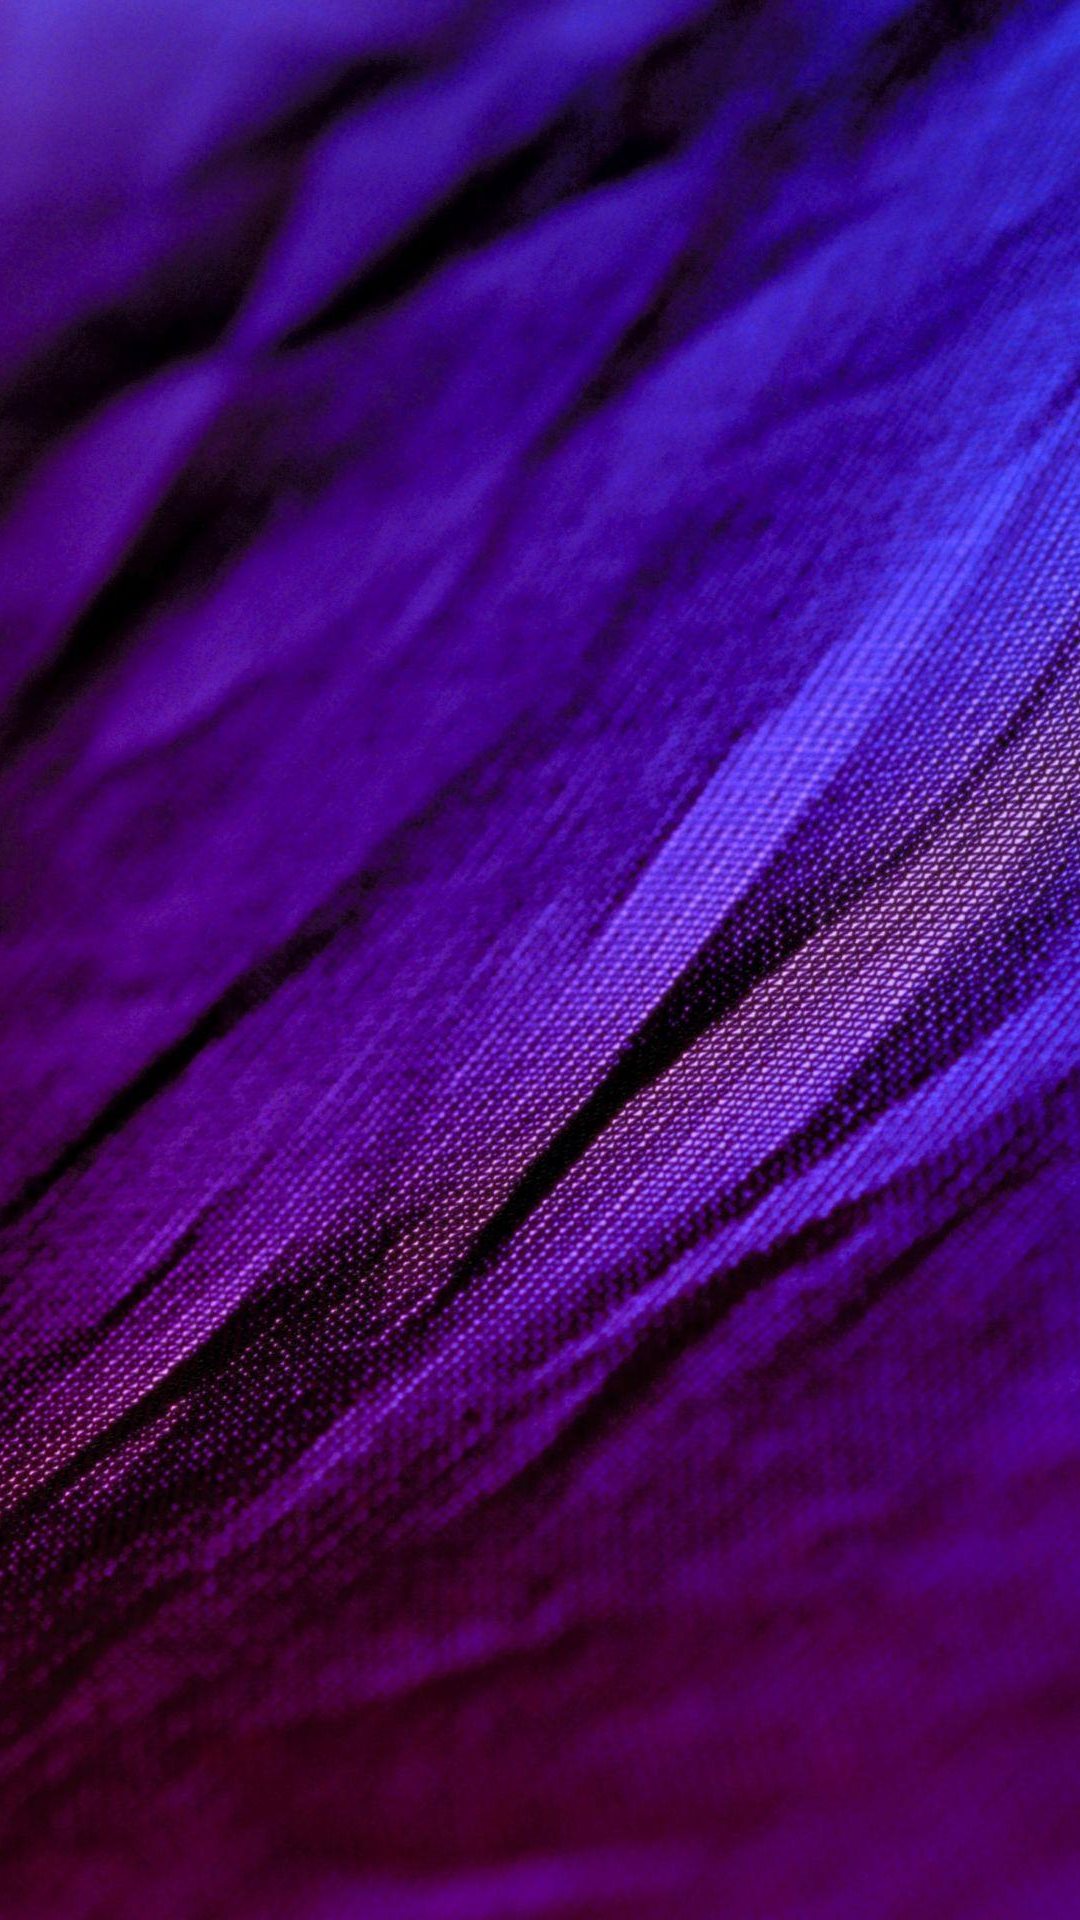 fond d'écran iphone violet,violet,violet,bleu,soie,lilas